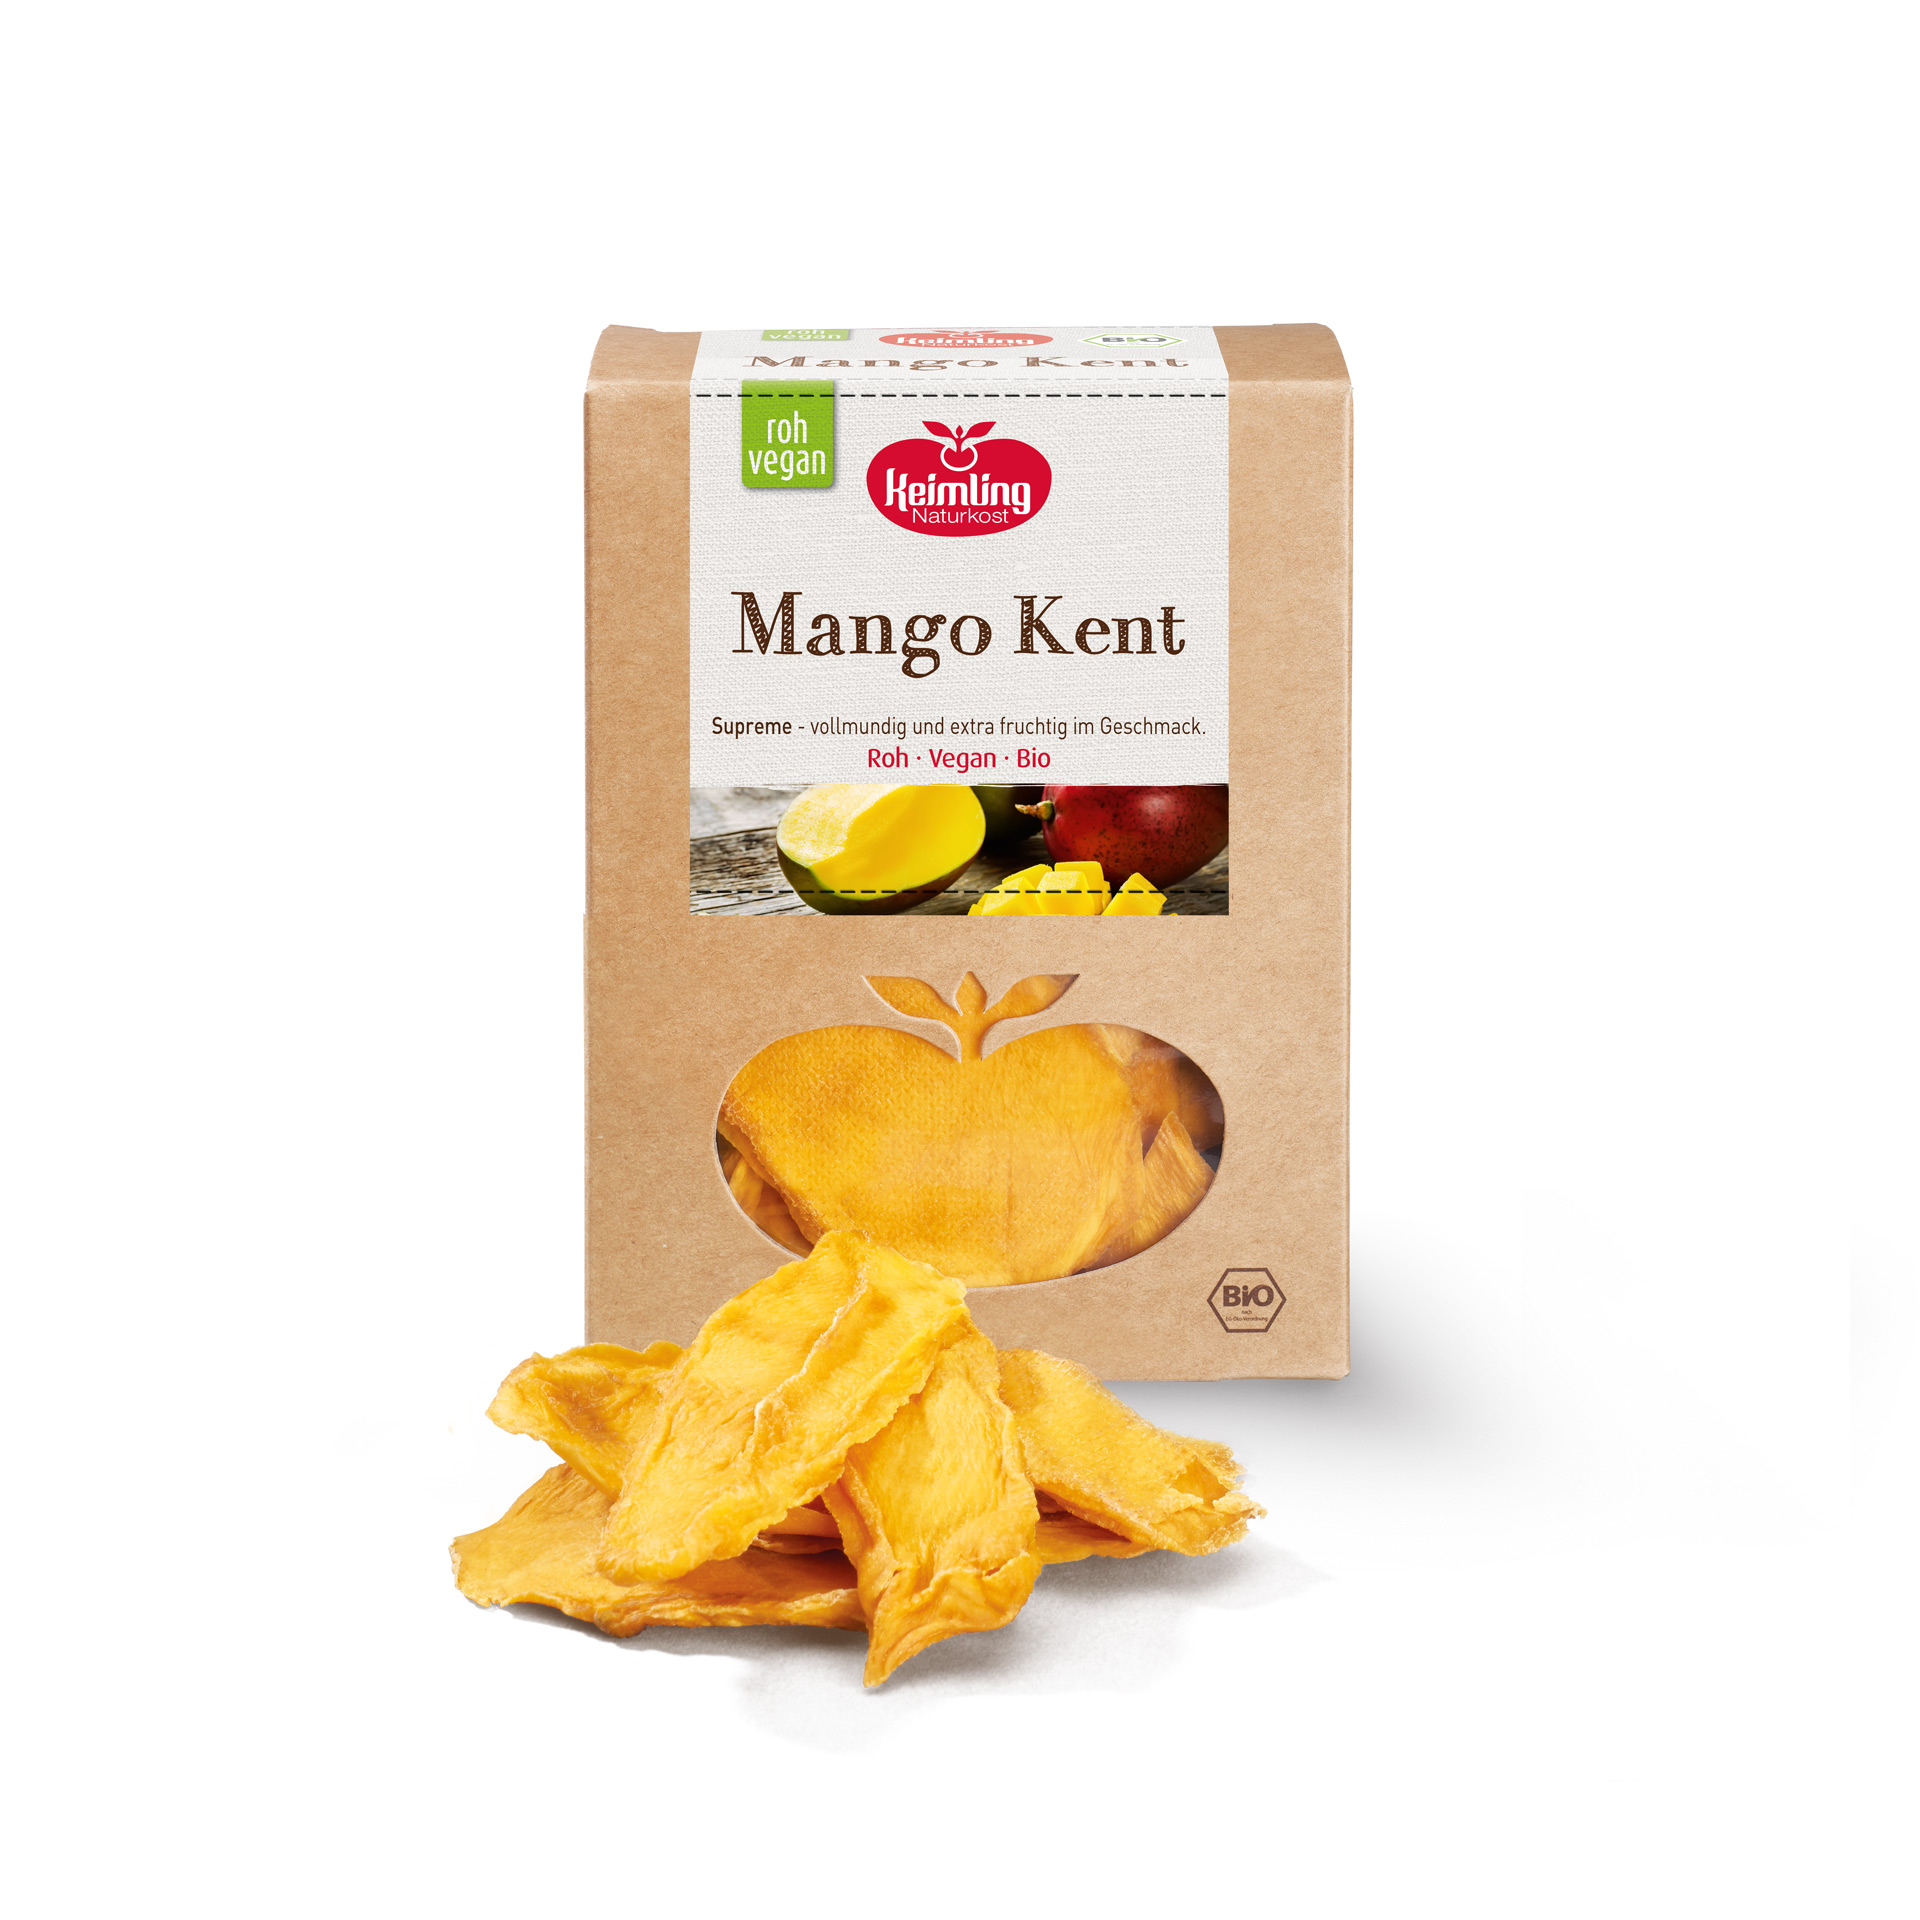 Mango Kent Supreme in Rohkost Qualität